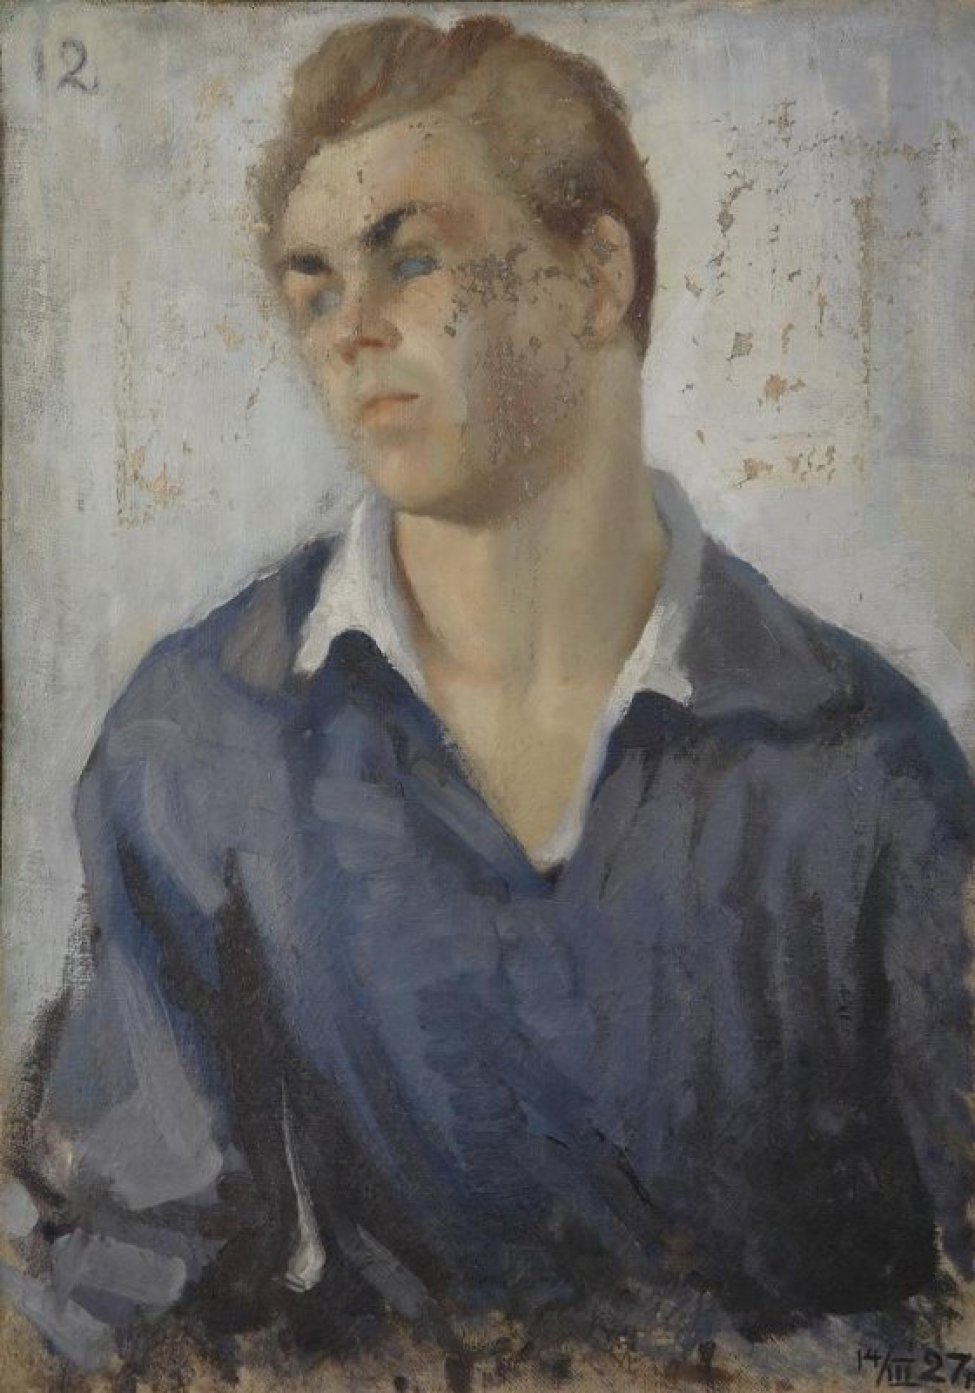 Поясное изображение молодого человека, одетого в серую рубашку с отложным воротником. Волосы русые, брови черные. Фон светлый, серо-голубой.